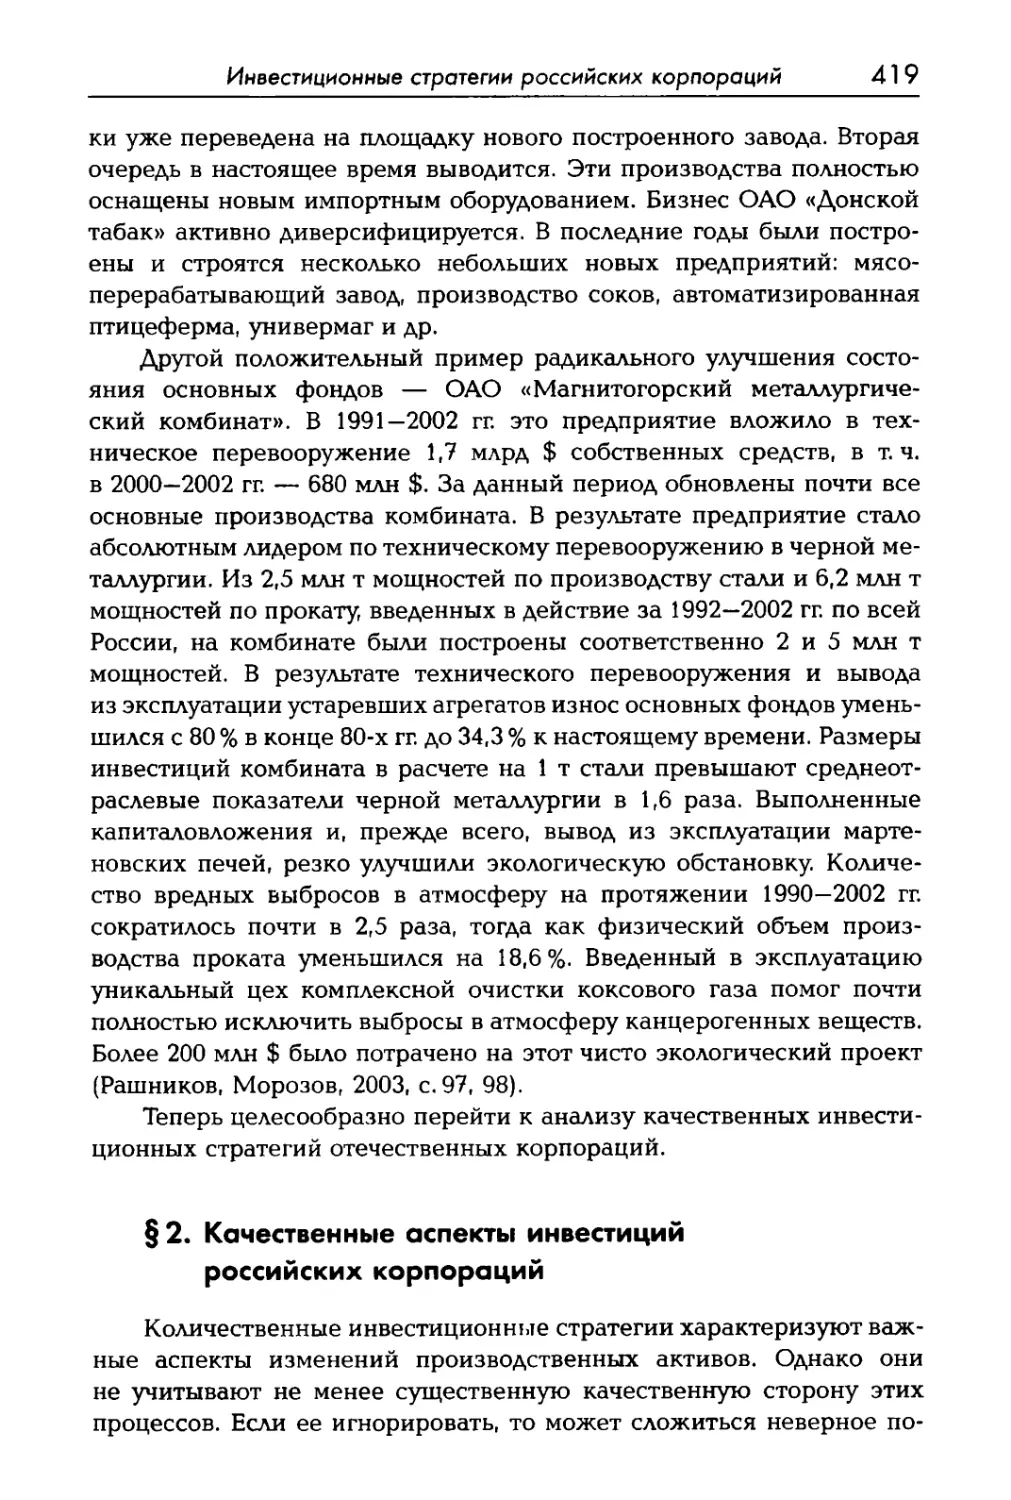 § 2. Качественные аспекты инвестиций российских корпораций